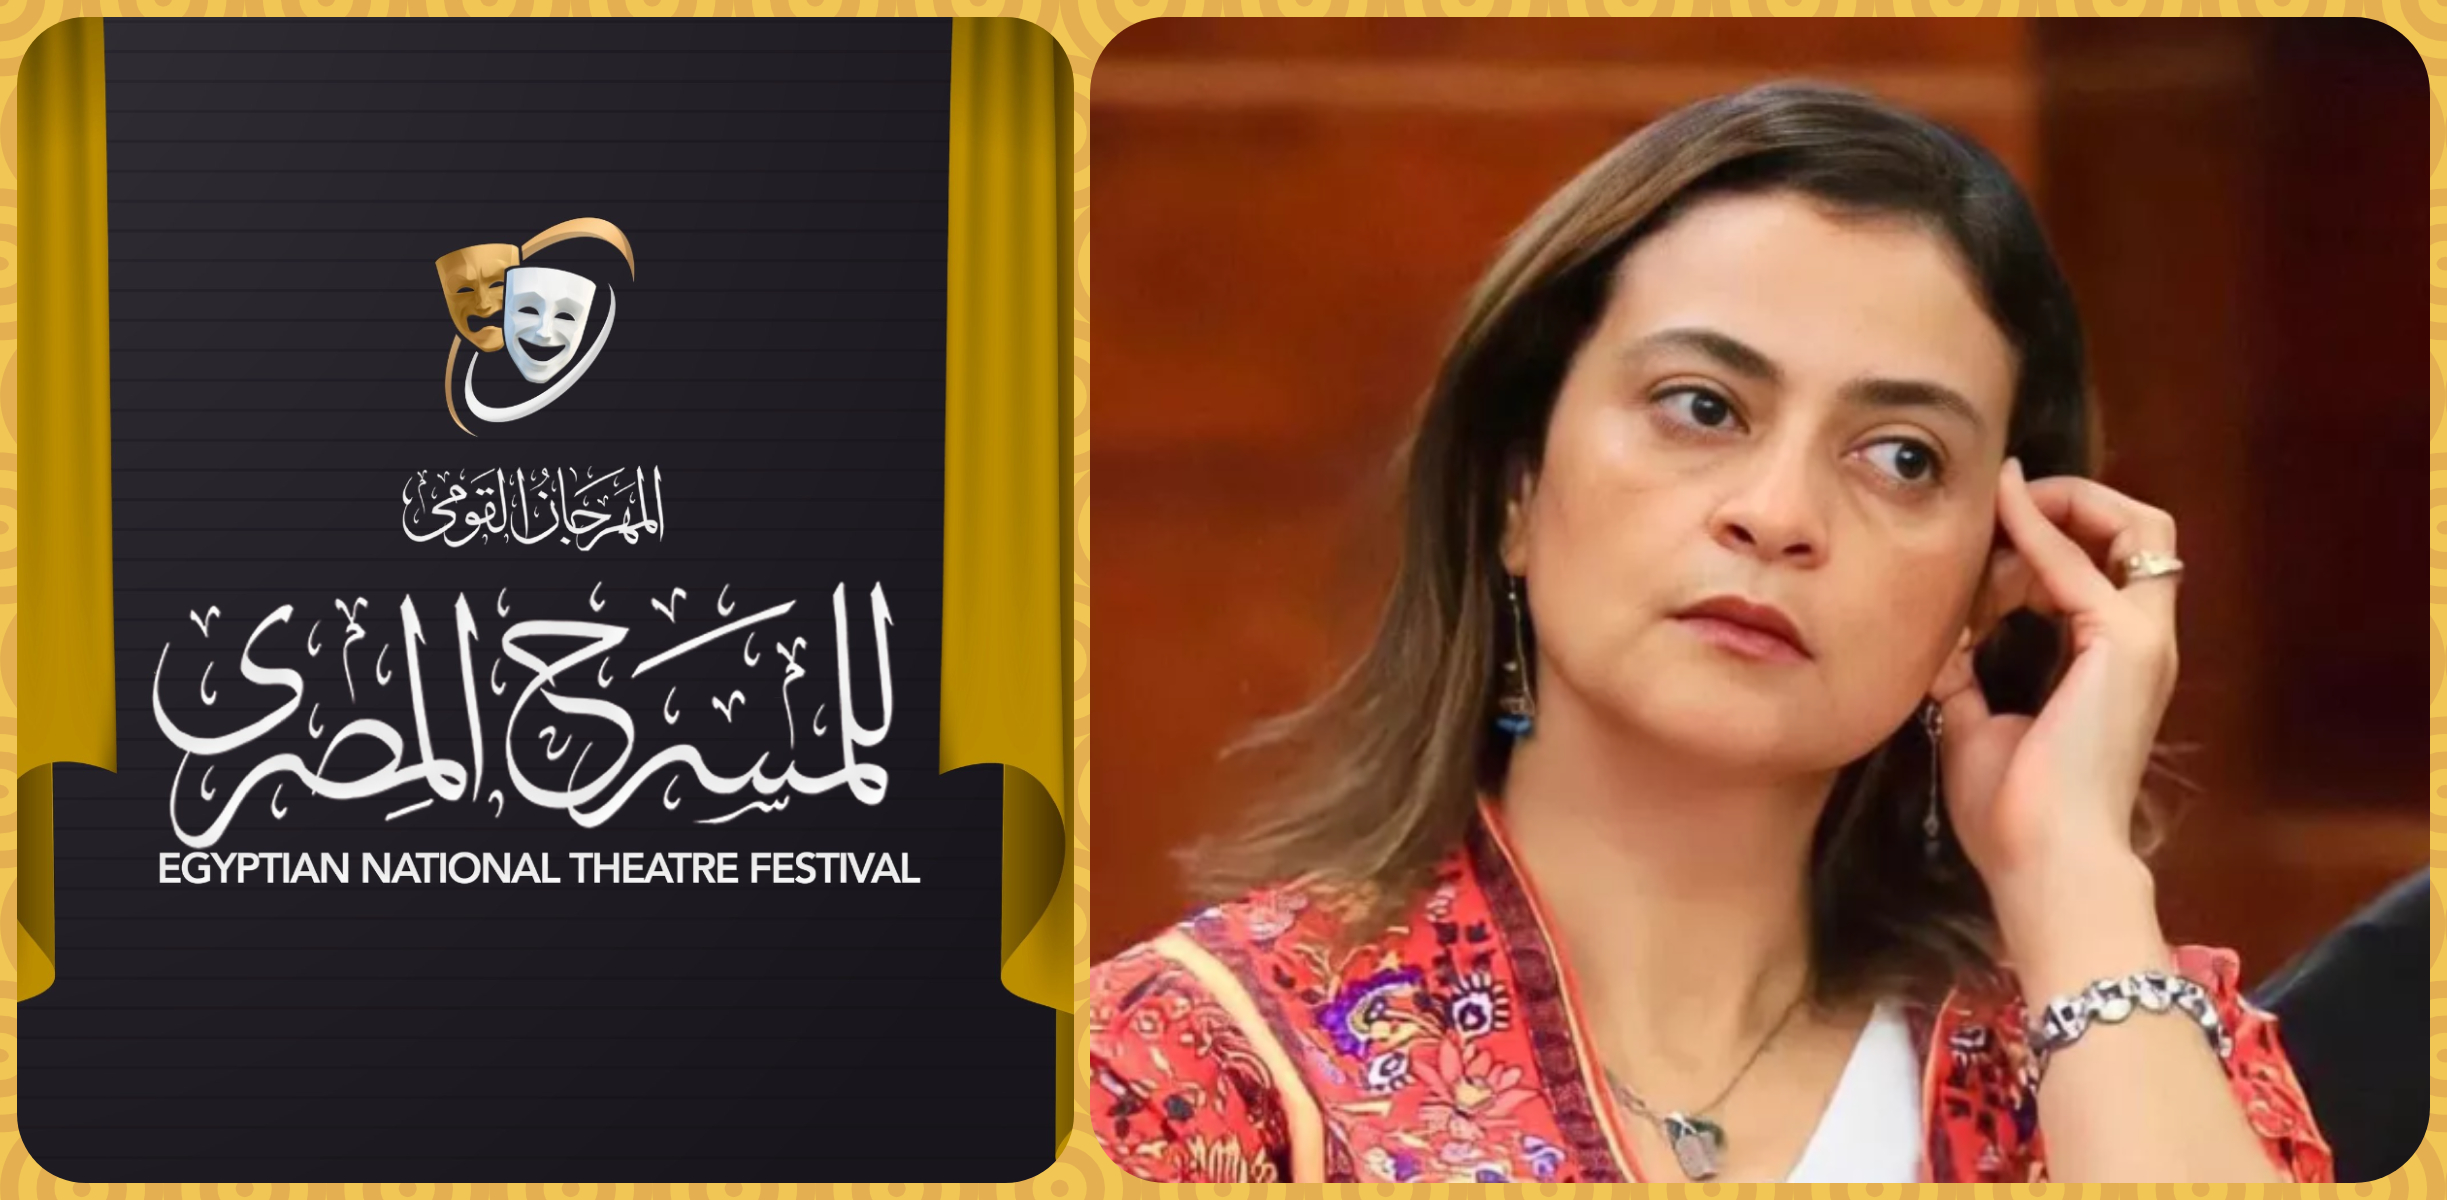 علا الشافعي في عضوية لجنة تحكيم المهرجان القومي للمسرح